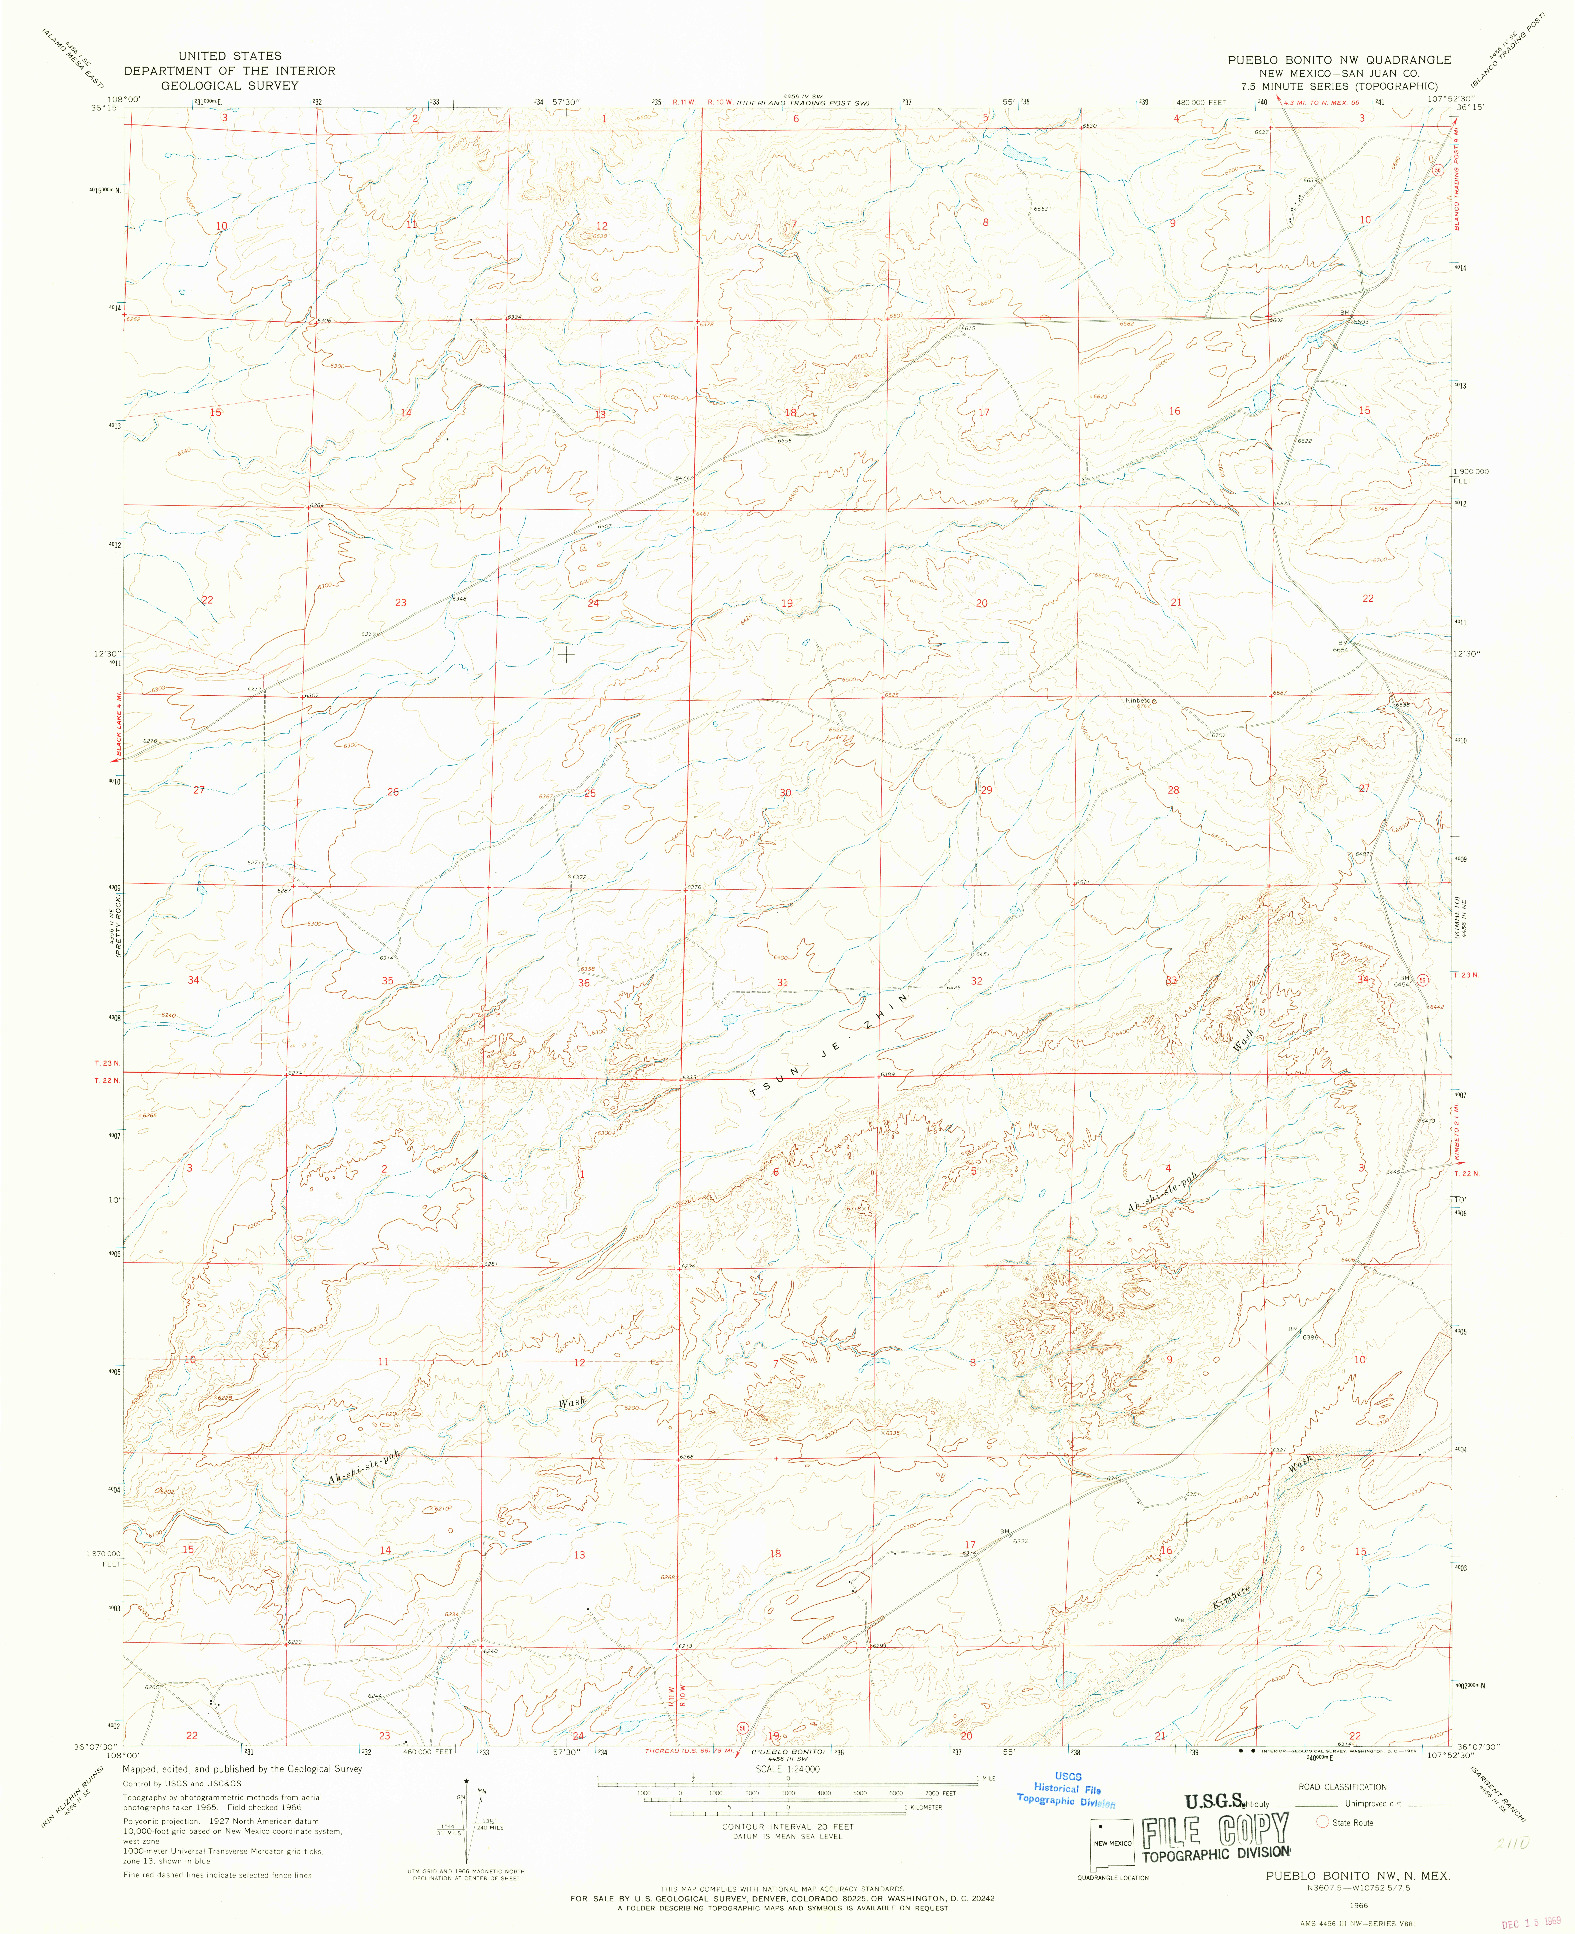 USGS 1:24000-SCALE QUADRANGLE FOR PUEBLO BONITO NW, NM 1966